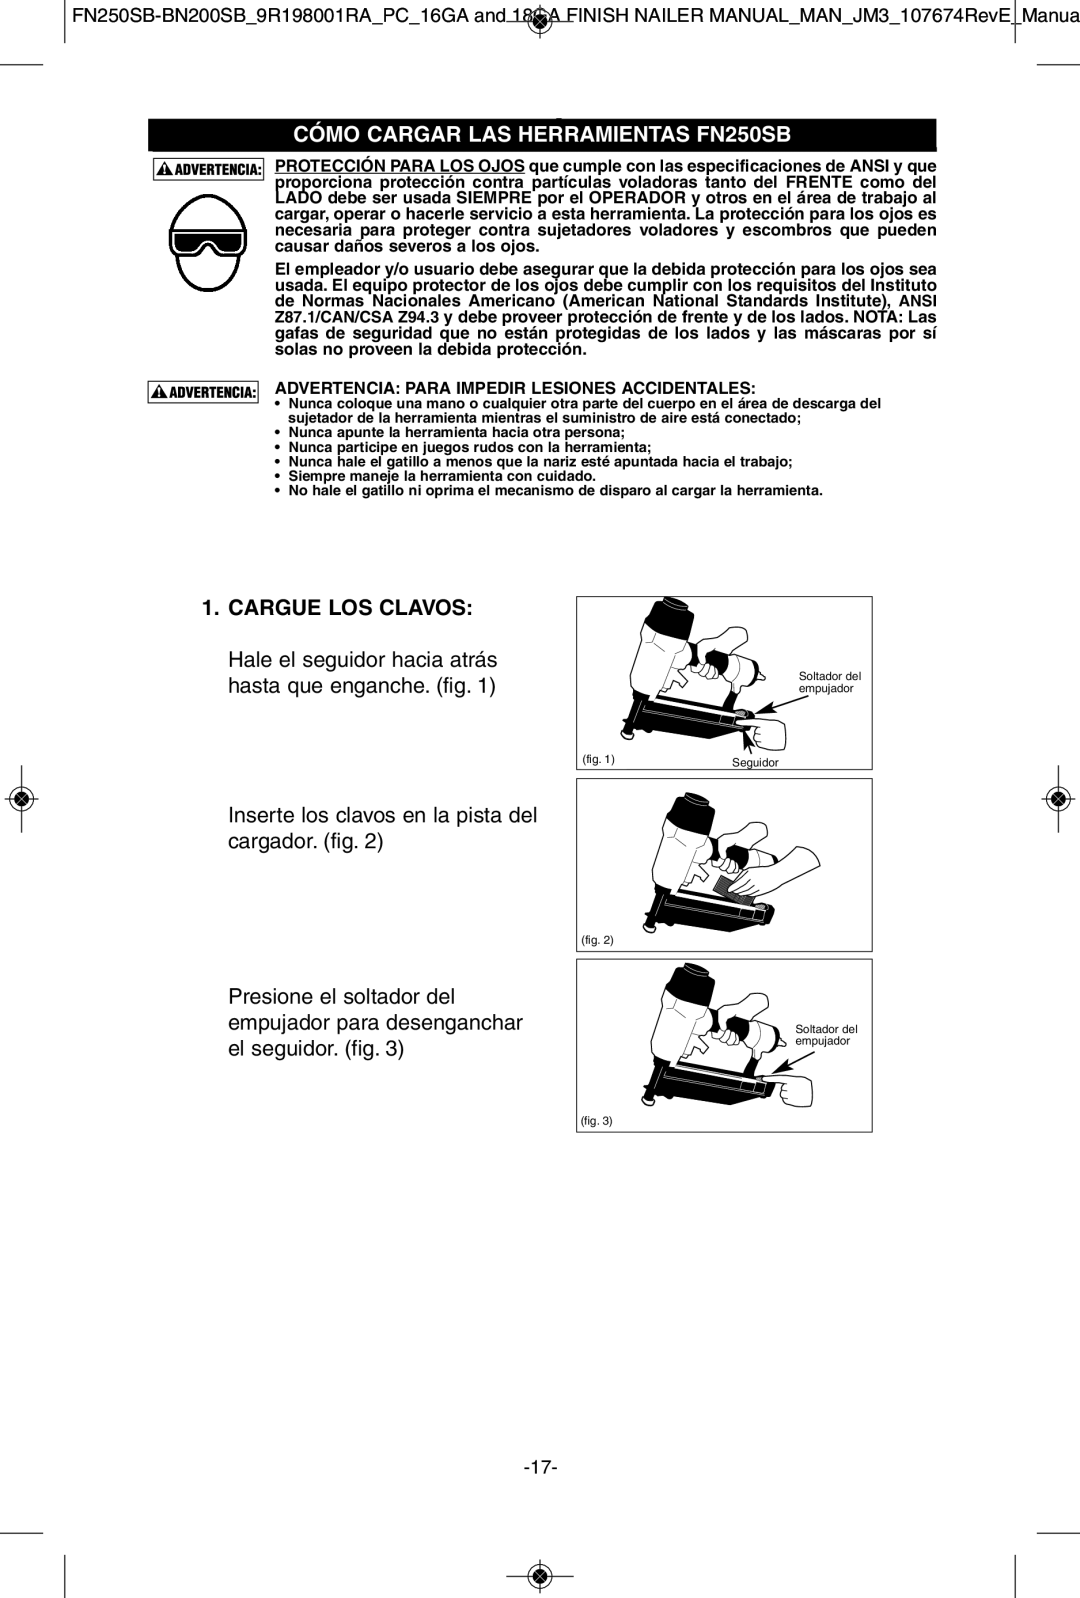 Porter-Cable BN200SB instruction manual Cargue LOS Clavos, Cómo Cargar LAS Herramientascómo CARGARFN250SBEL FN250SB 